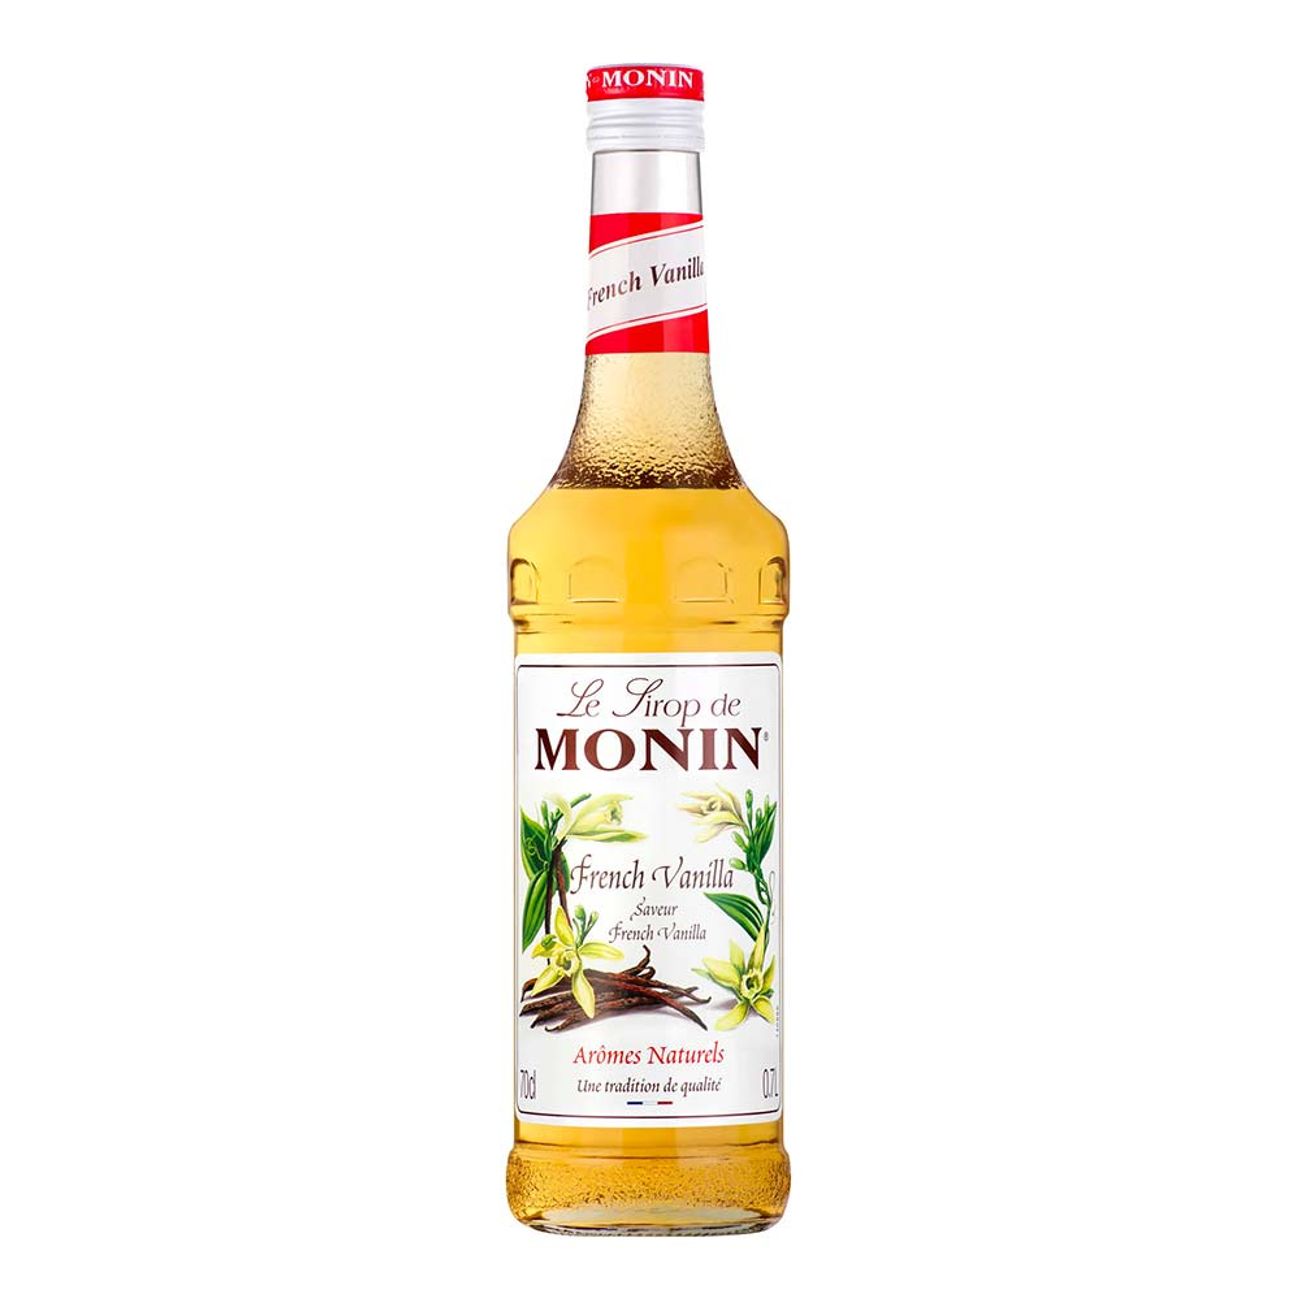 monin-french-vanilla-syrup-95463-1